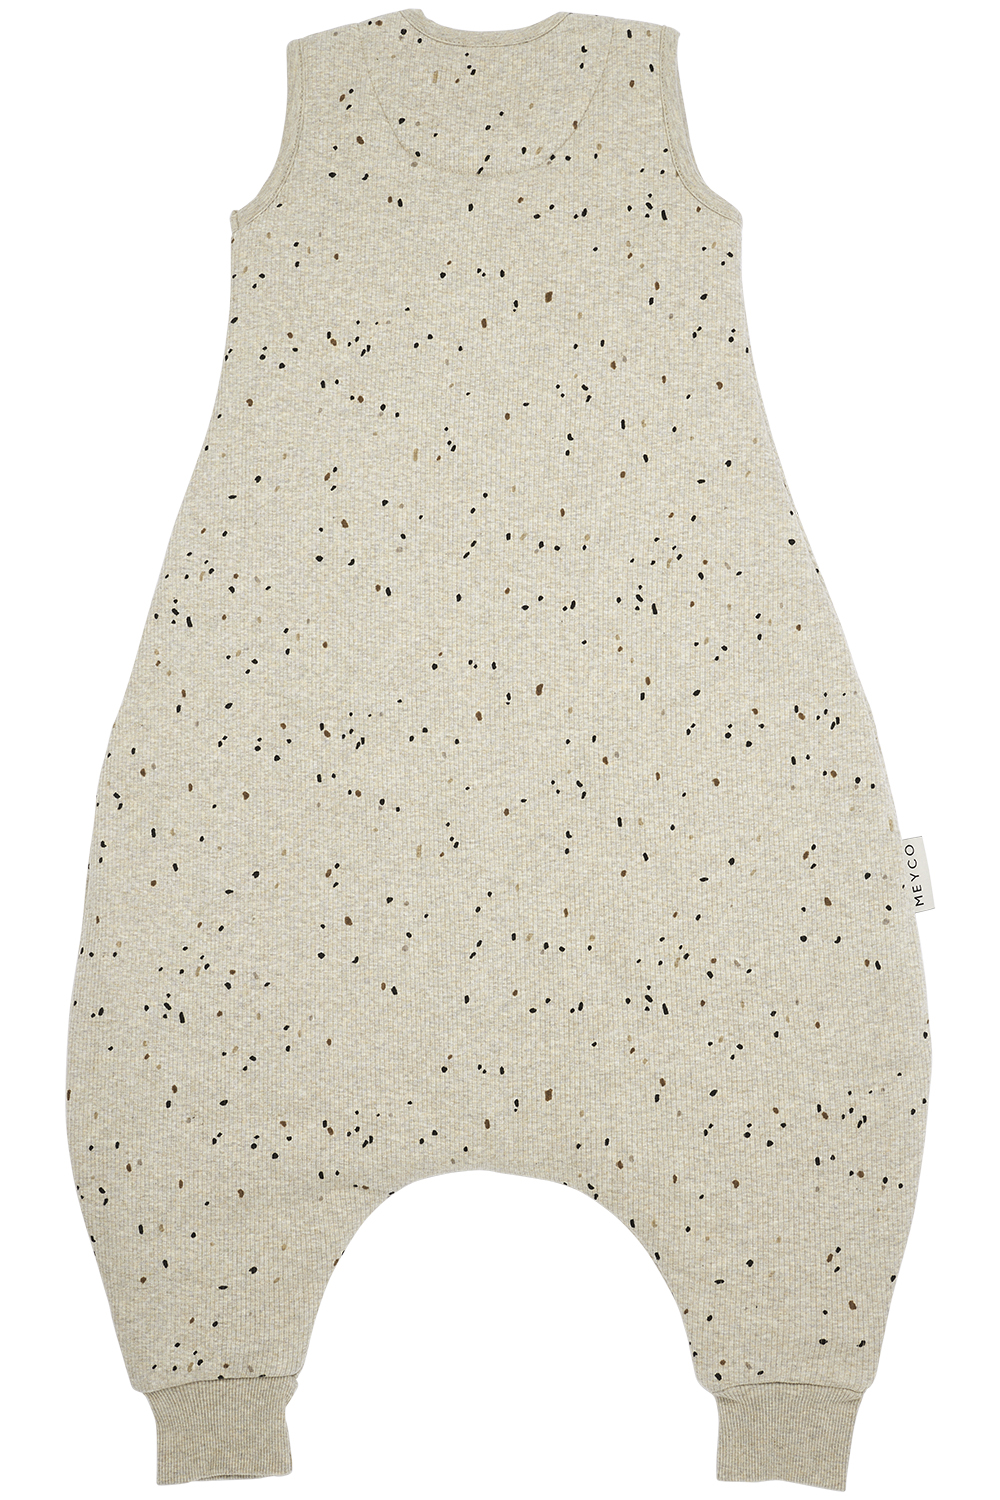 Baby winter sleep overall jumper Rib Mini Spot - sand melange - 80cm